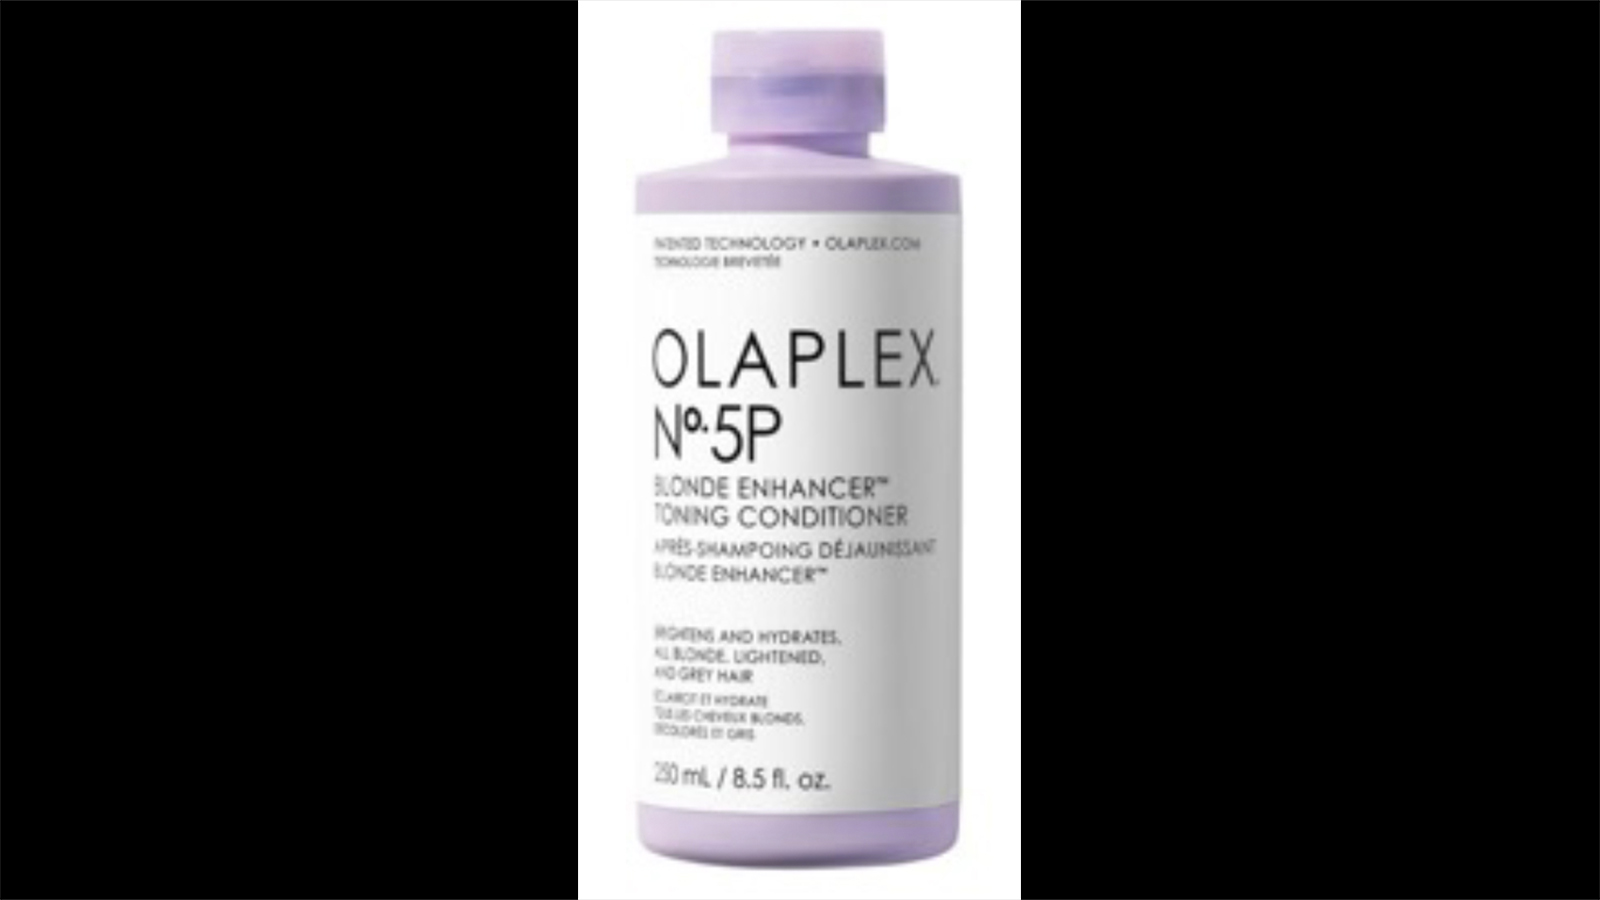 OLAPLEX N5P Blonde Enhancer Toning Conditioner